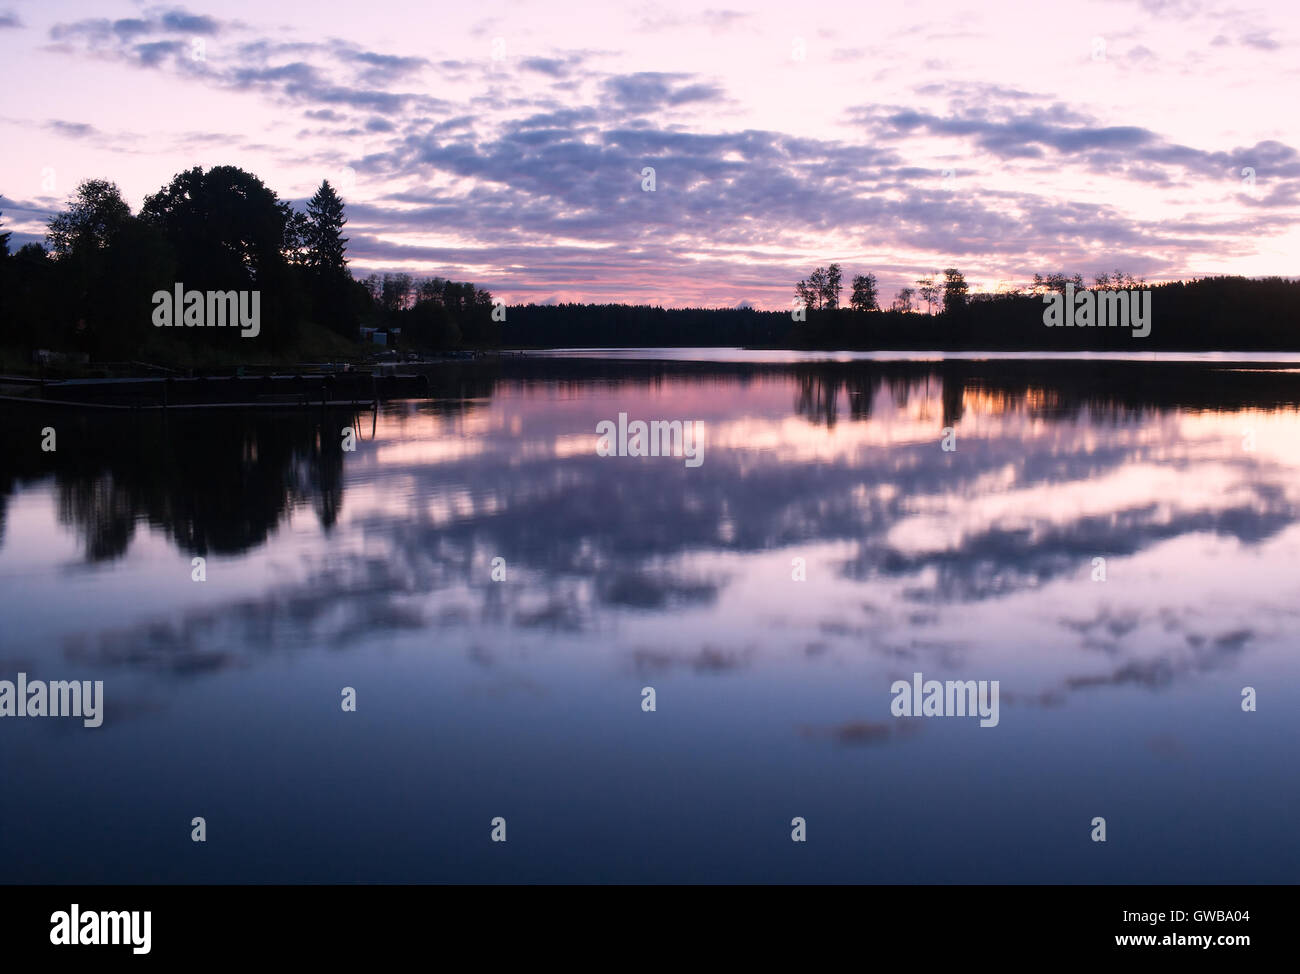 Paysage au petit matin avec surface de l'eau (avec les réflexions) et de la forêt, le lever du soleil, ciel et nuages. Banque D'Images